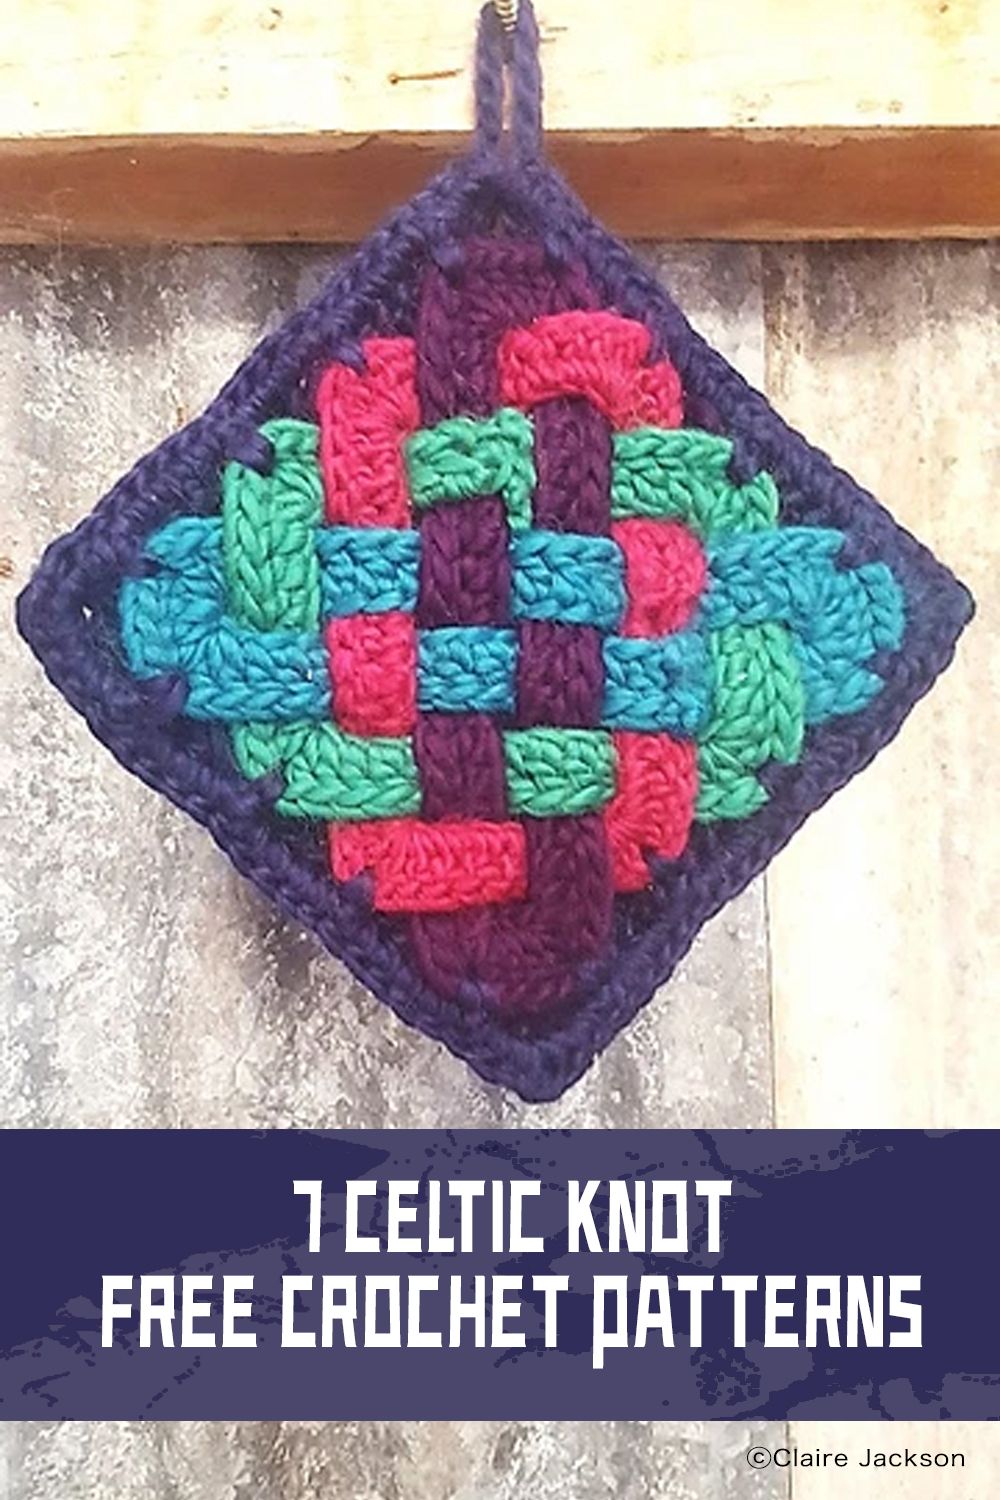 7 Celtic Knot Crochet FREE Patterns